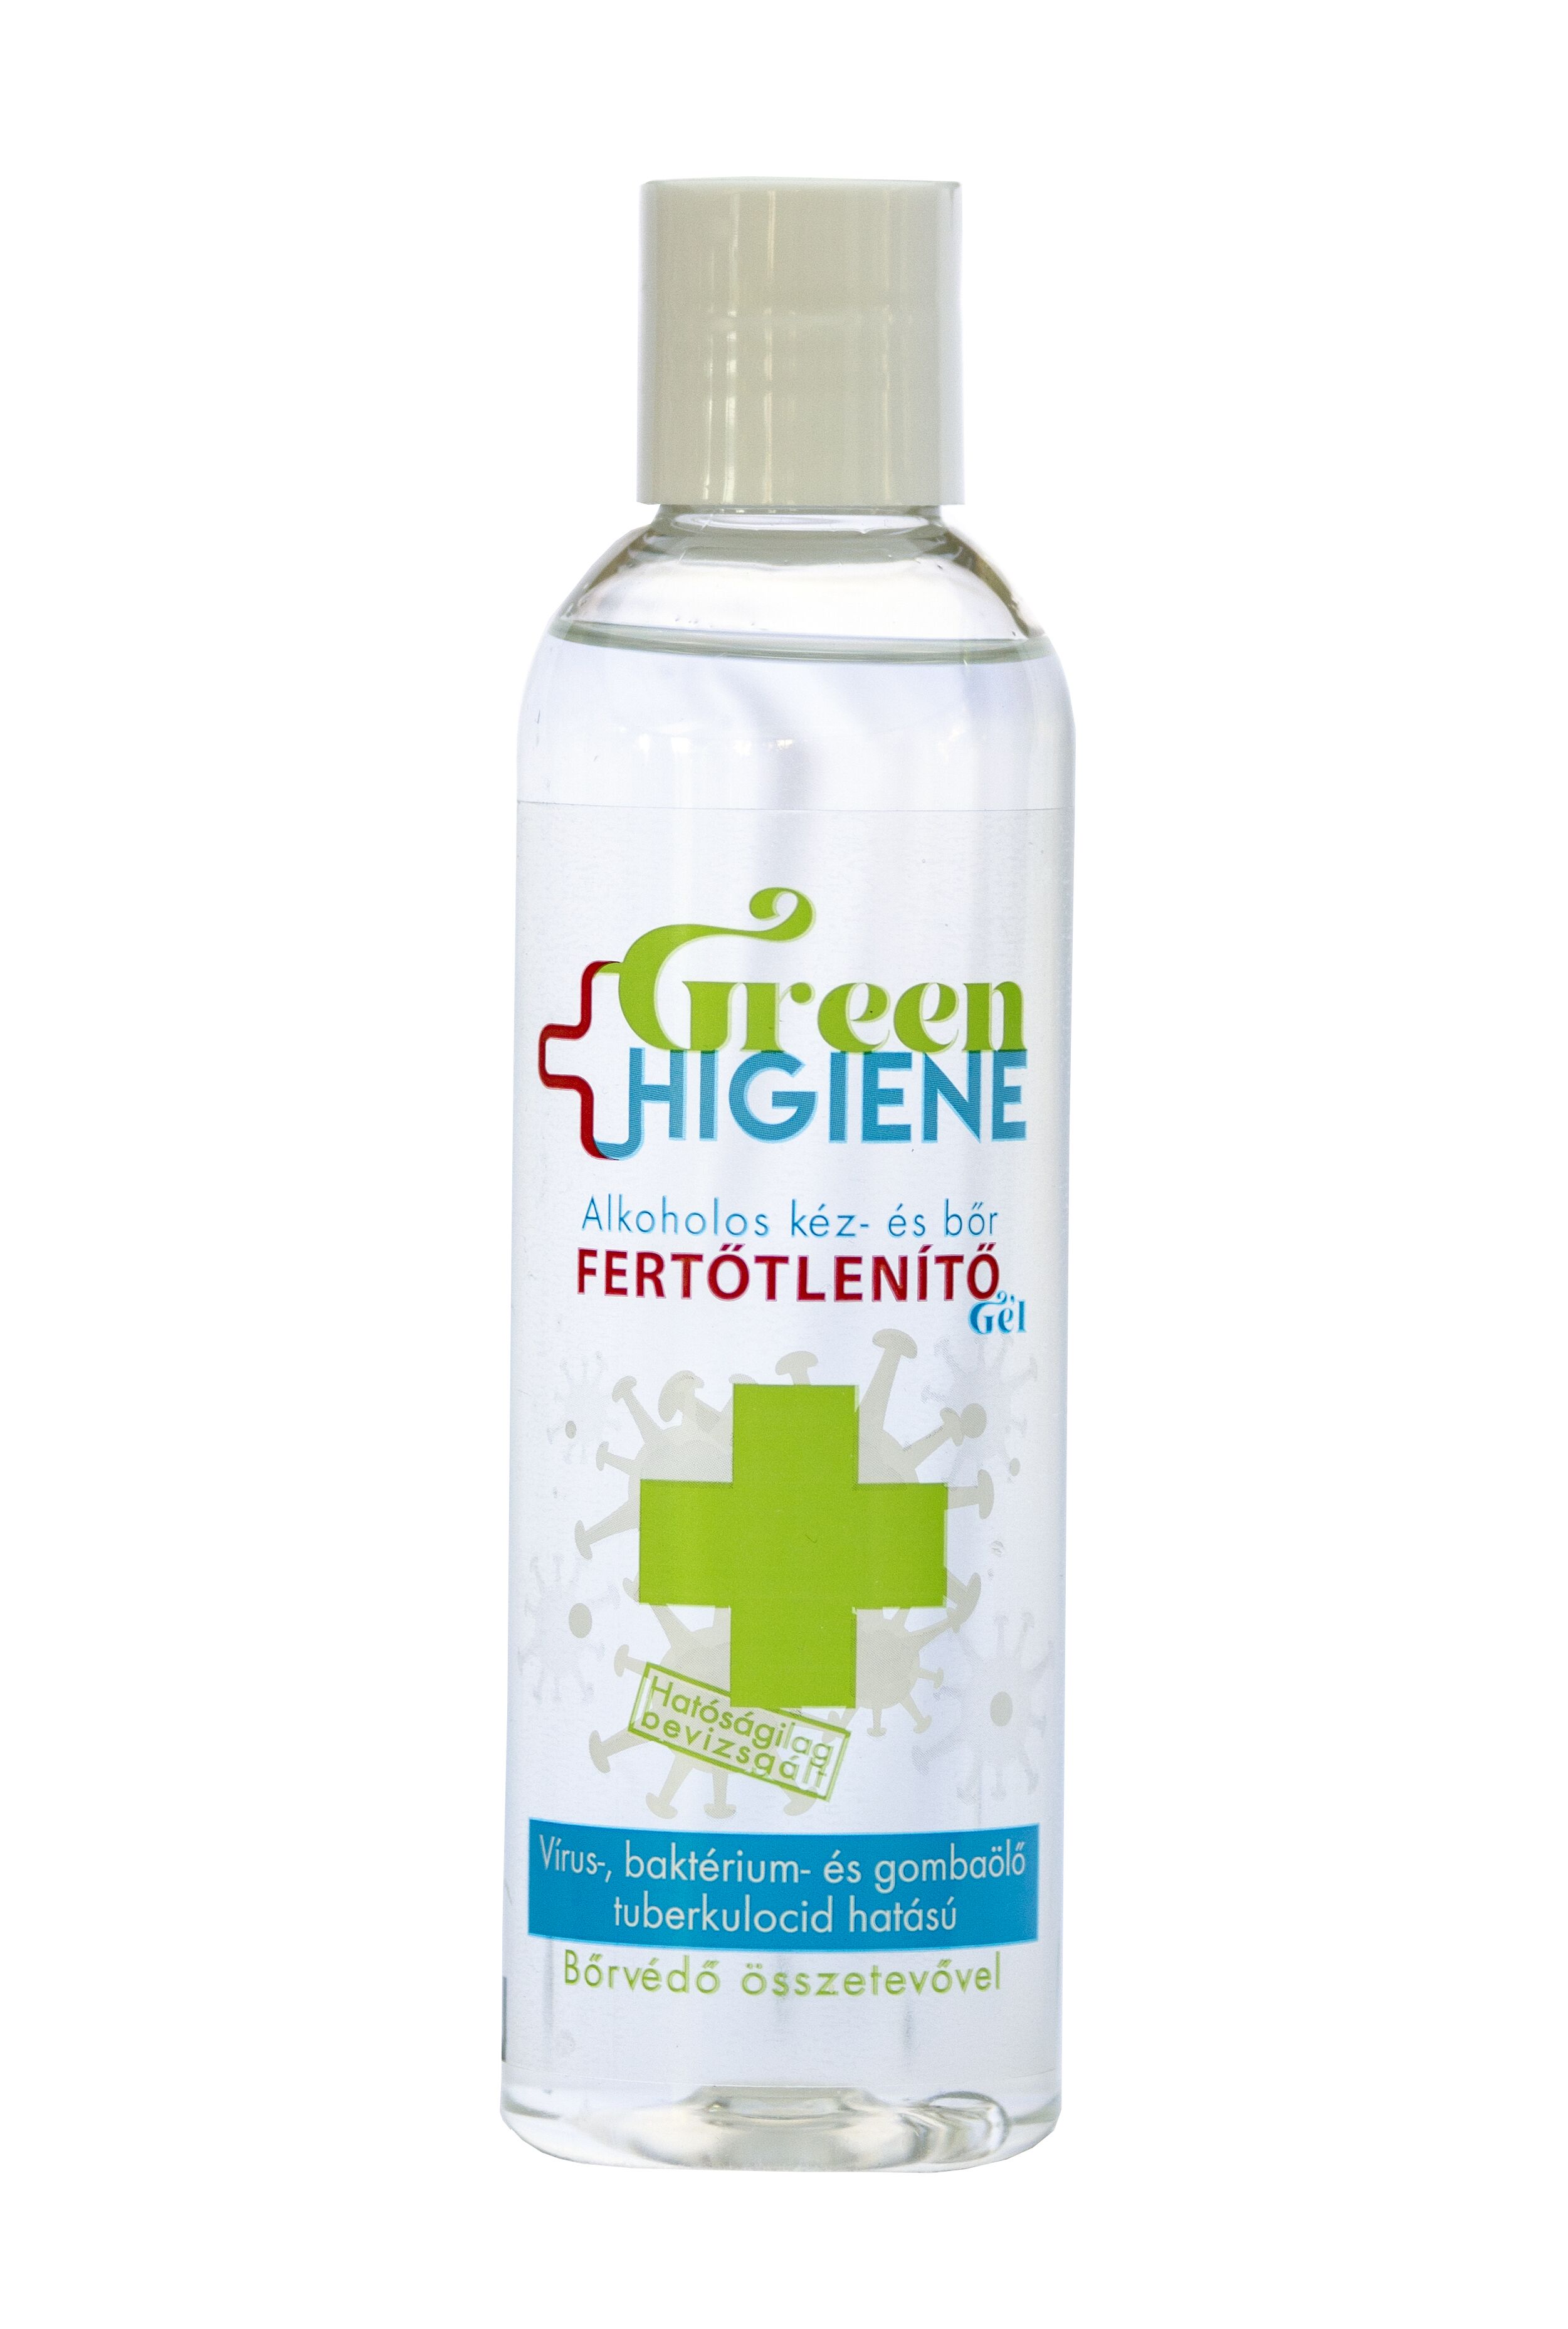 Green Higiene Alkoholos Kéz- és bőrfertőtlenítő gél kupakkal 200 ml